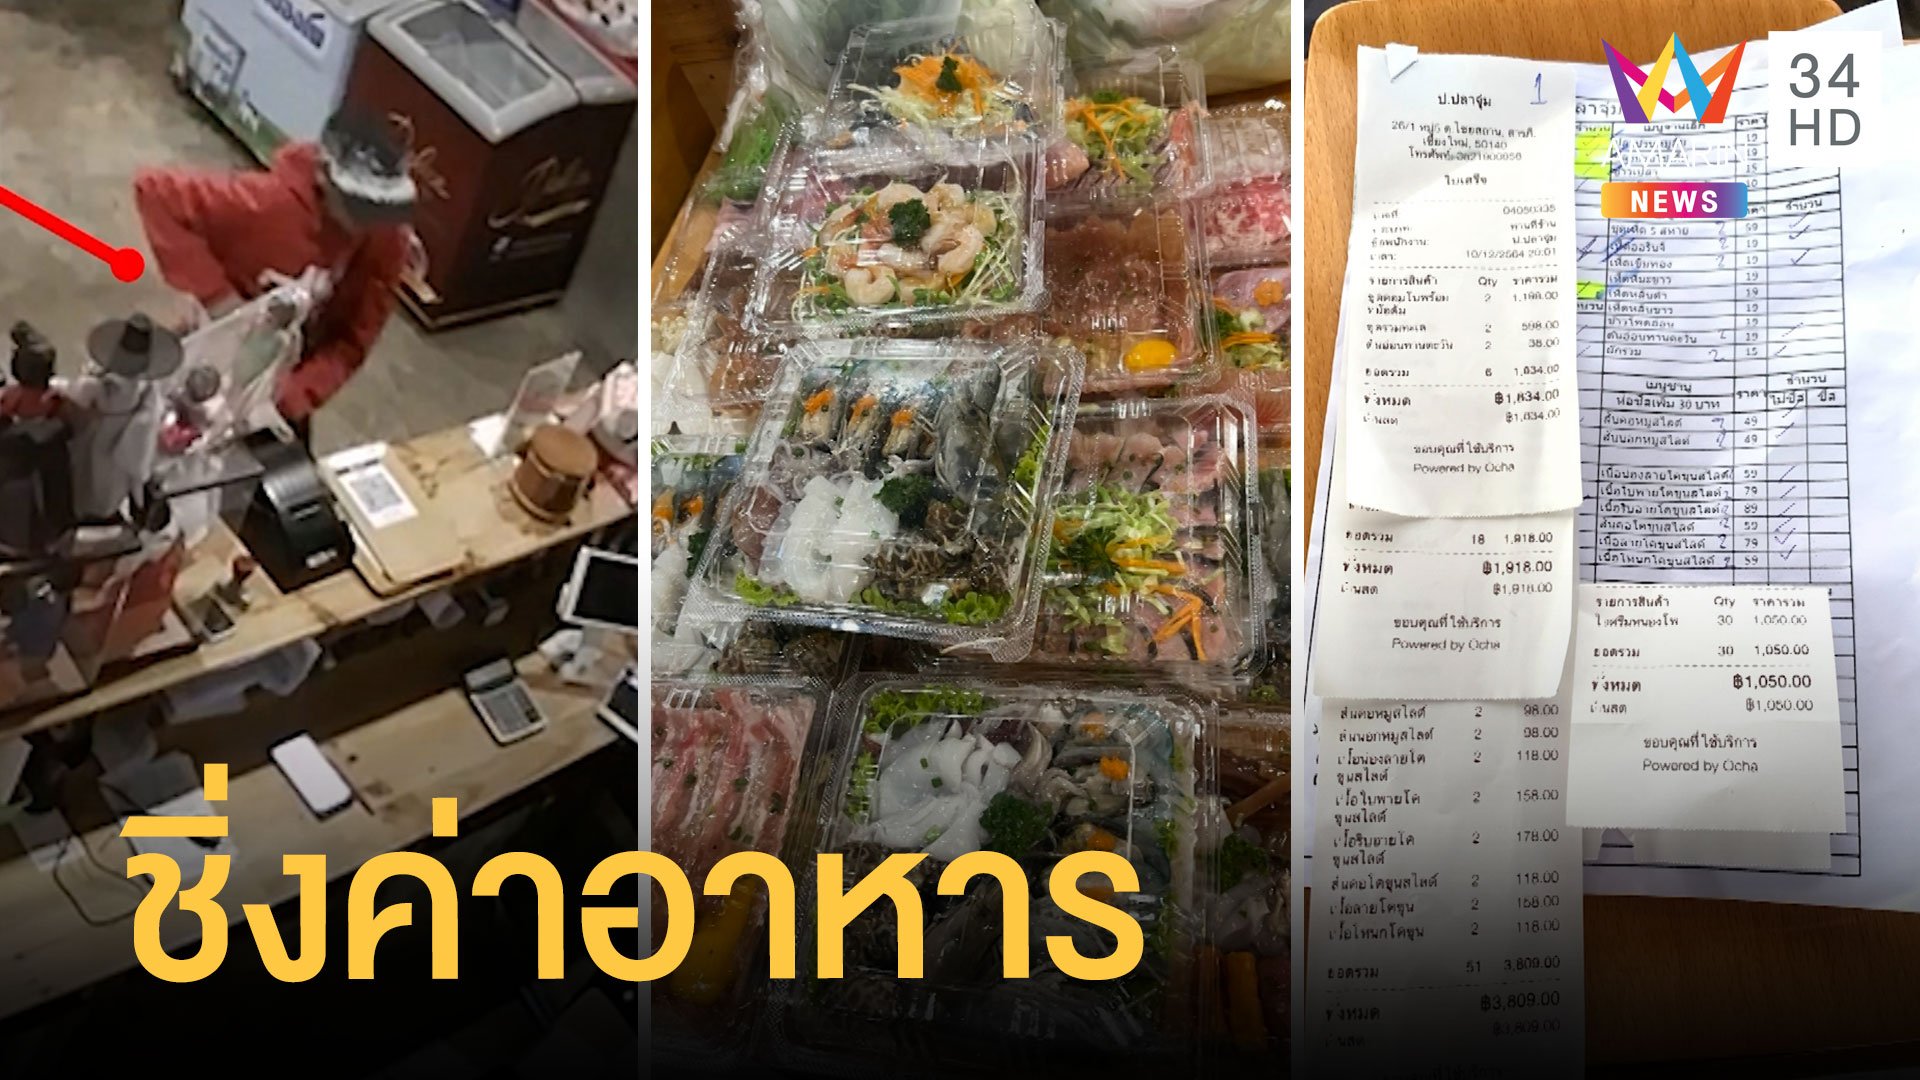 ลูกค้าสั่งอาหารเฉียดหมื่น ก่อนชิ่งไม่จ่ายเงิน | ข่าวอรุณอมรินทร์ | 13 ธ.ค. 64 | AMARIN TVHD34